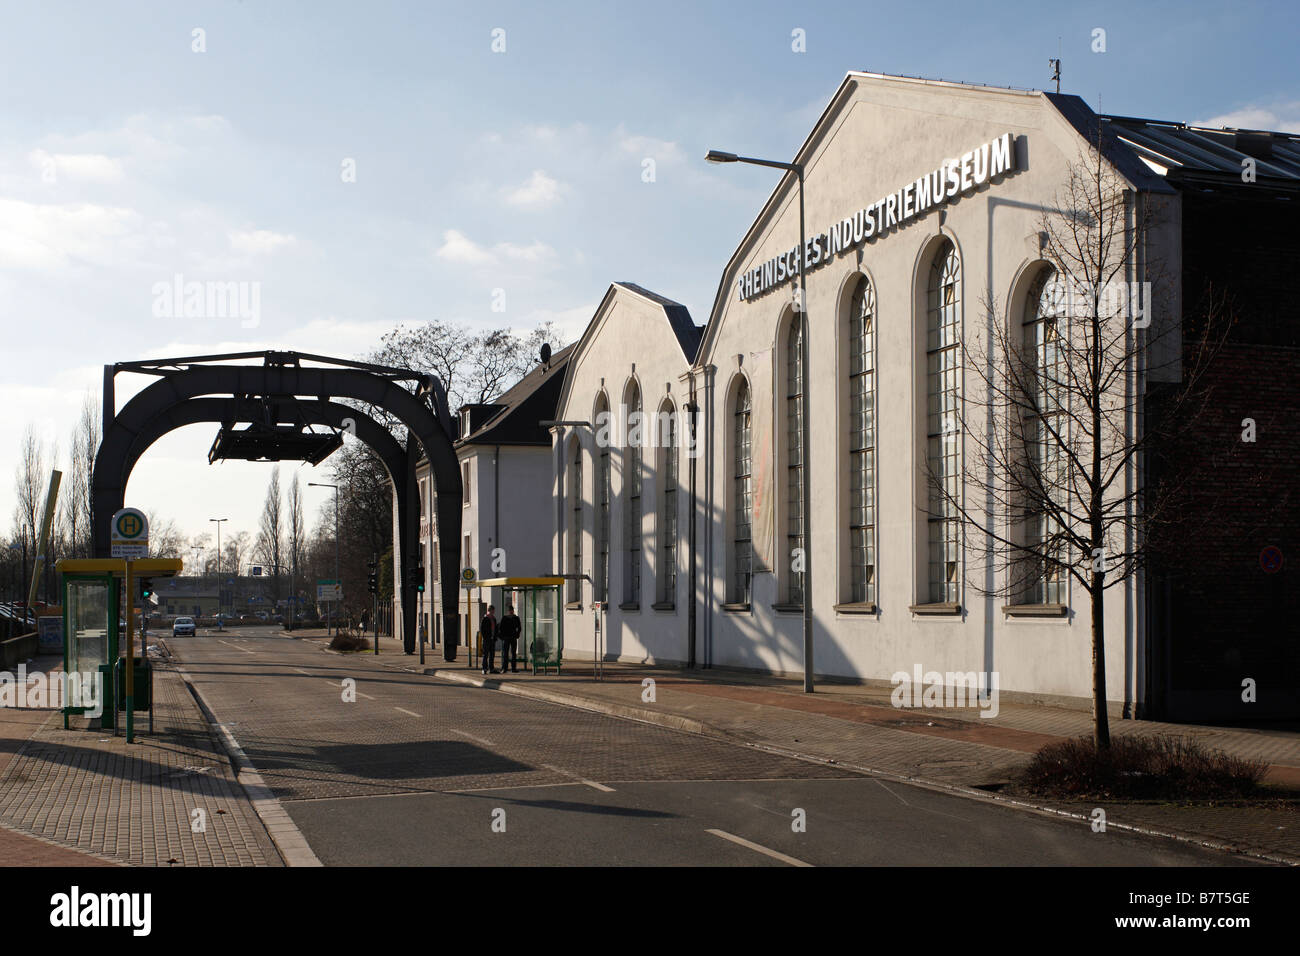 Oberhausen, Zinkfabrik Altenberg, LVR-Industriemuseum, Museum der Schwerindustrie, Straßenseite, Eingangsbereich Foto Stock